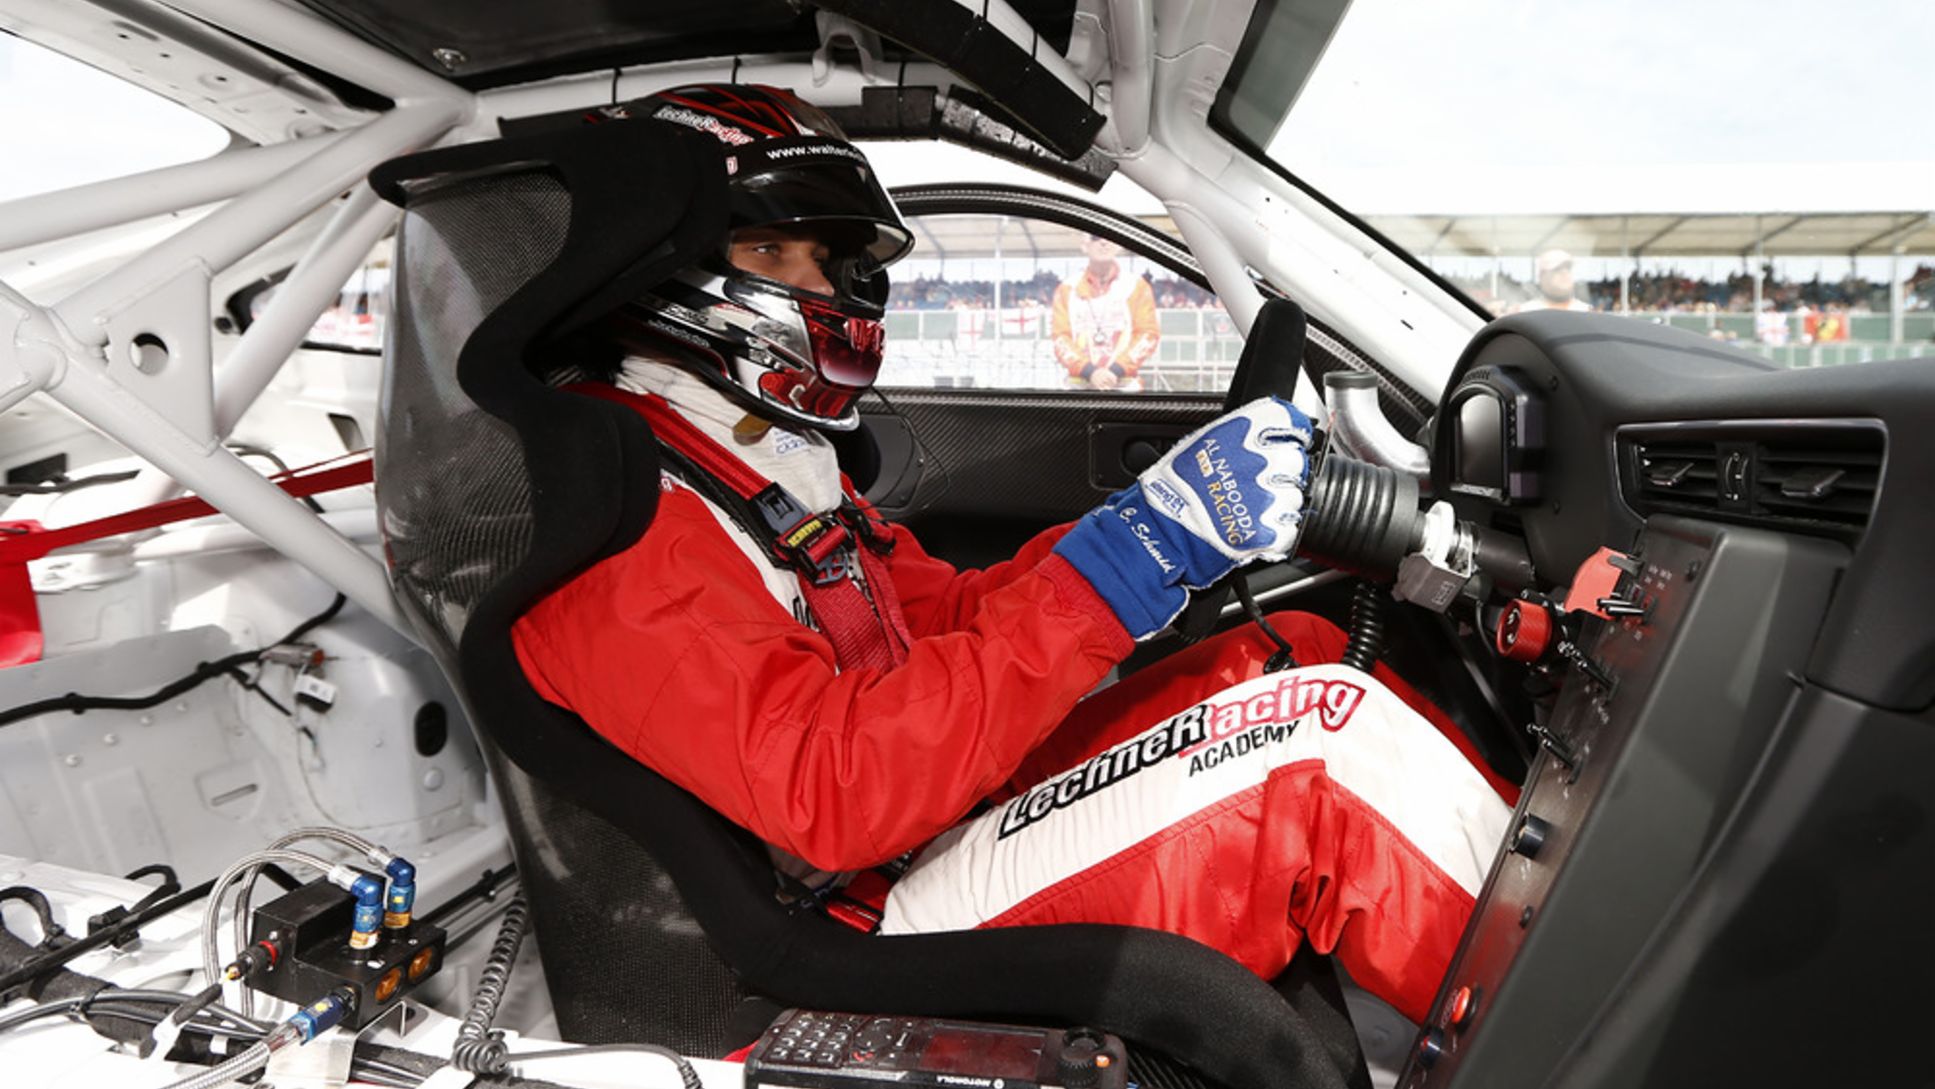 Clemens Schmid, Werksfahrer, Porsche Mobil 1 Supercup, Silverstone, 2014, Porsche AG